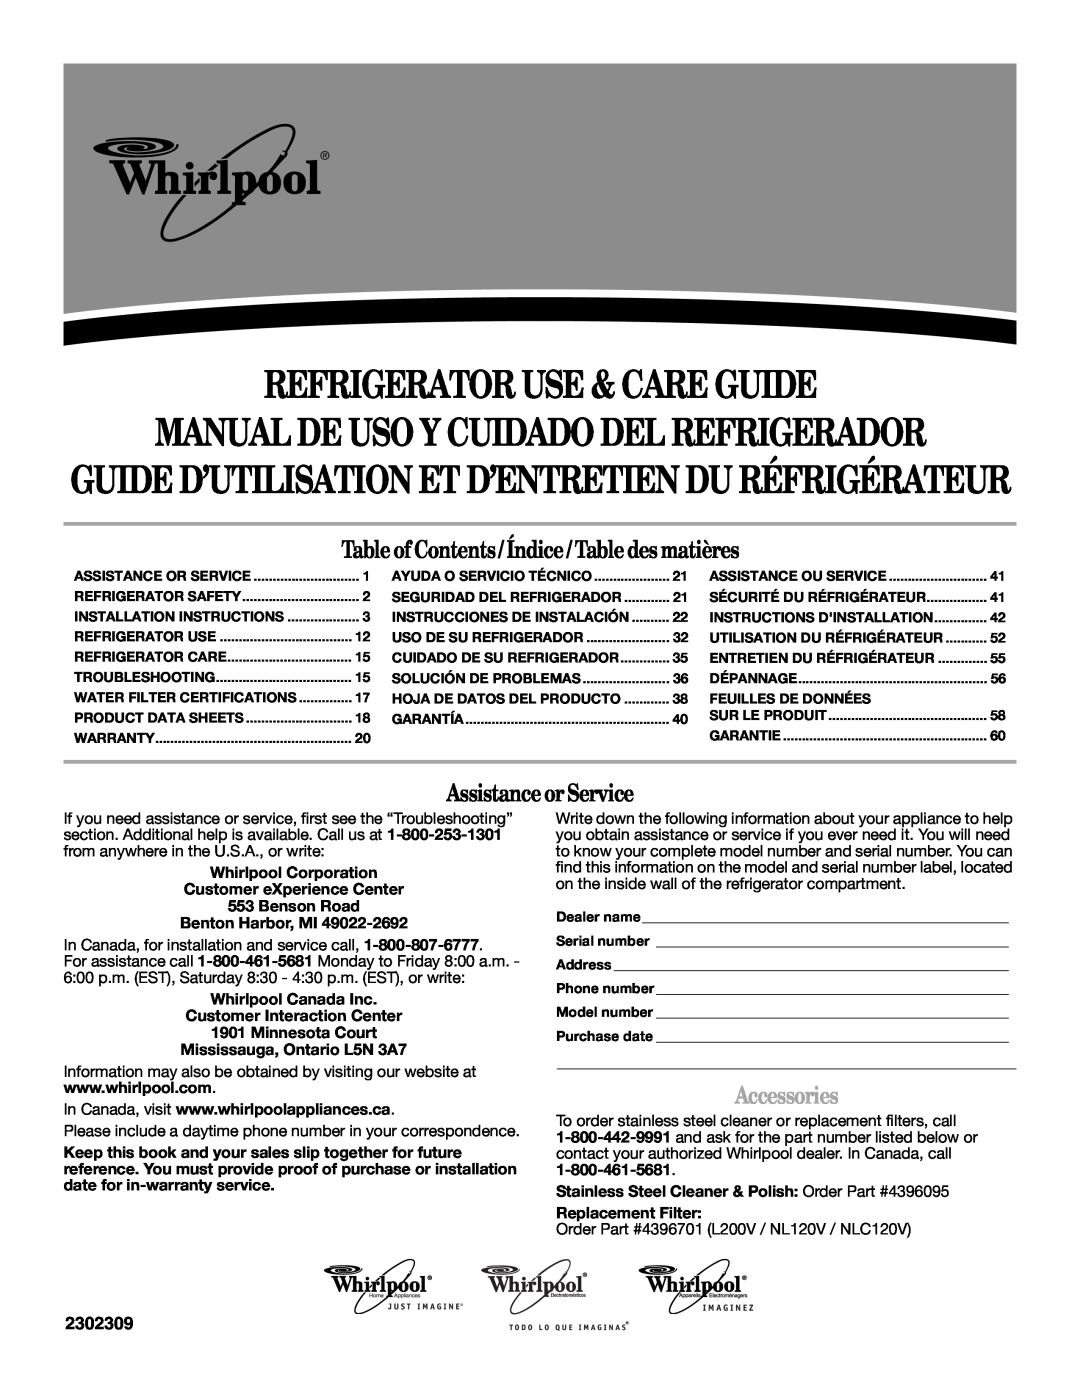 Whirlpool 2302309 warranty Manualde Uso Y Cuidado Del Refrigerador, Guide D’Utilisation Et D’Entretien Du Réfrigérateur 